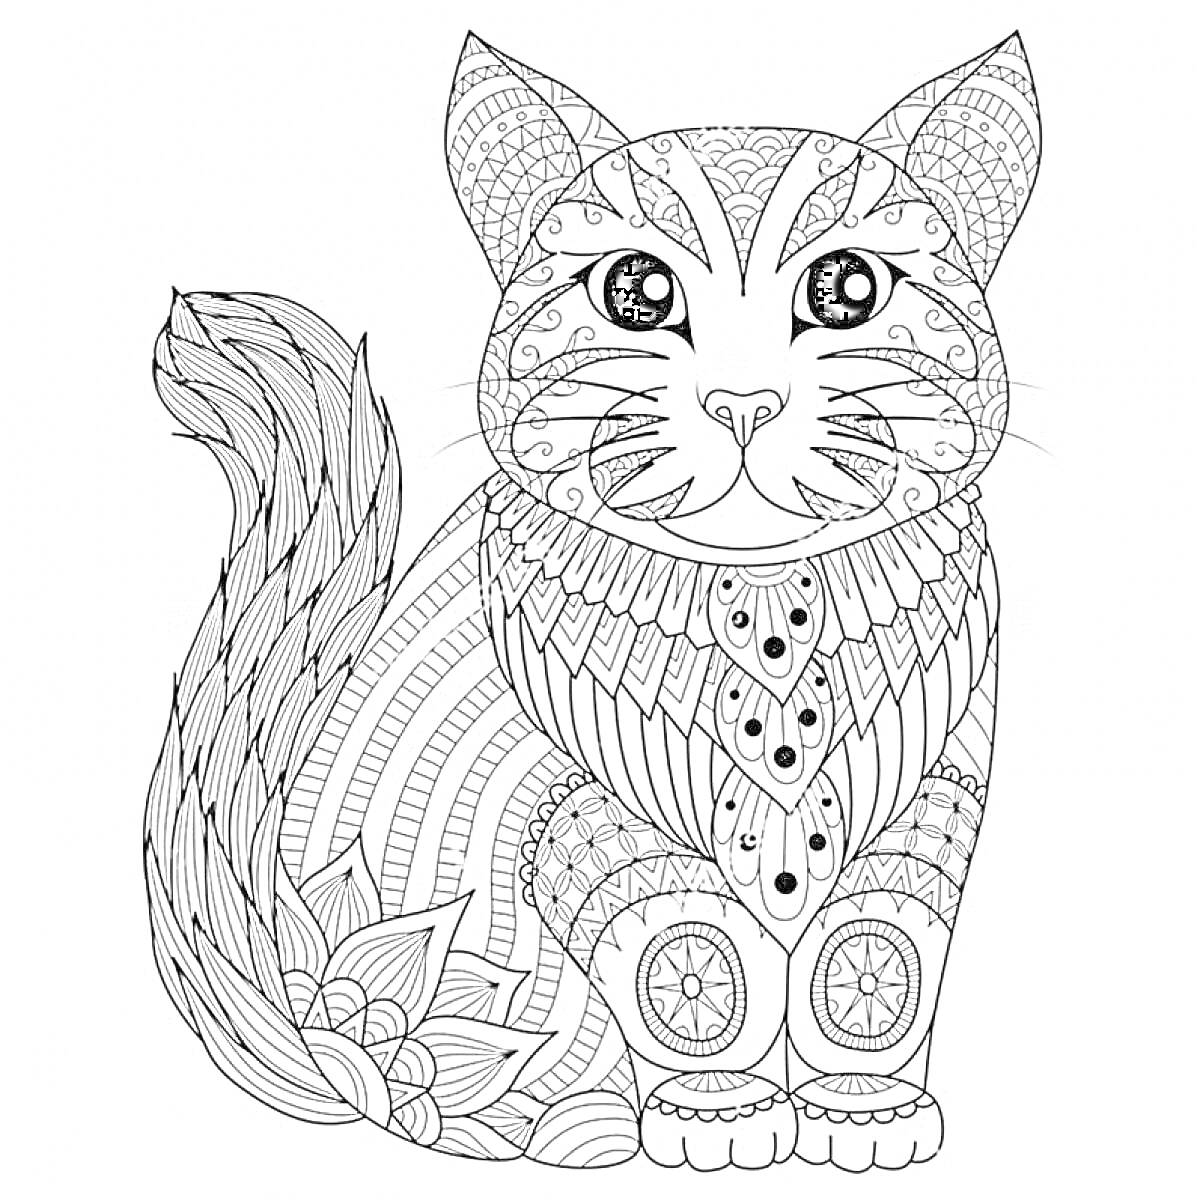 Антистресс раскраска с кошкой, украшенная сложными геометрическими узорами, завитками и цветочными элементами.